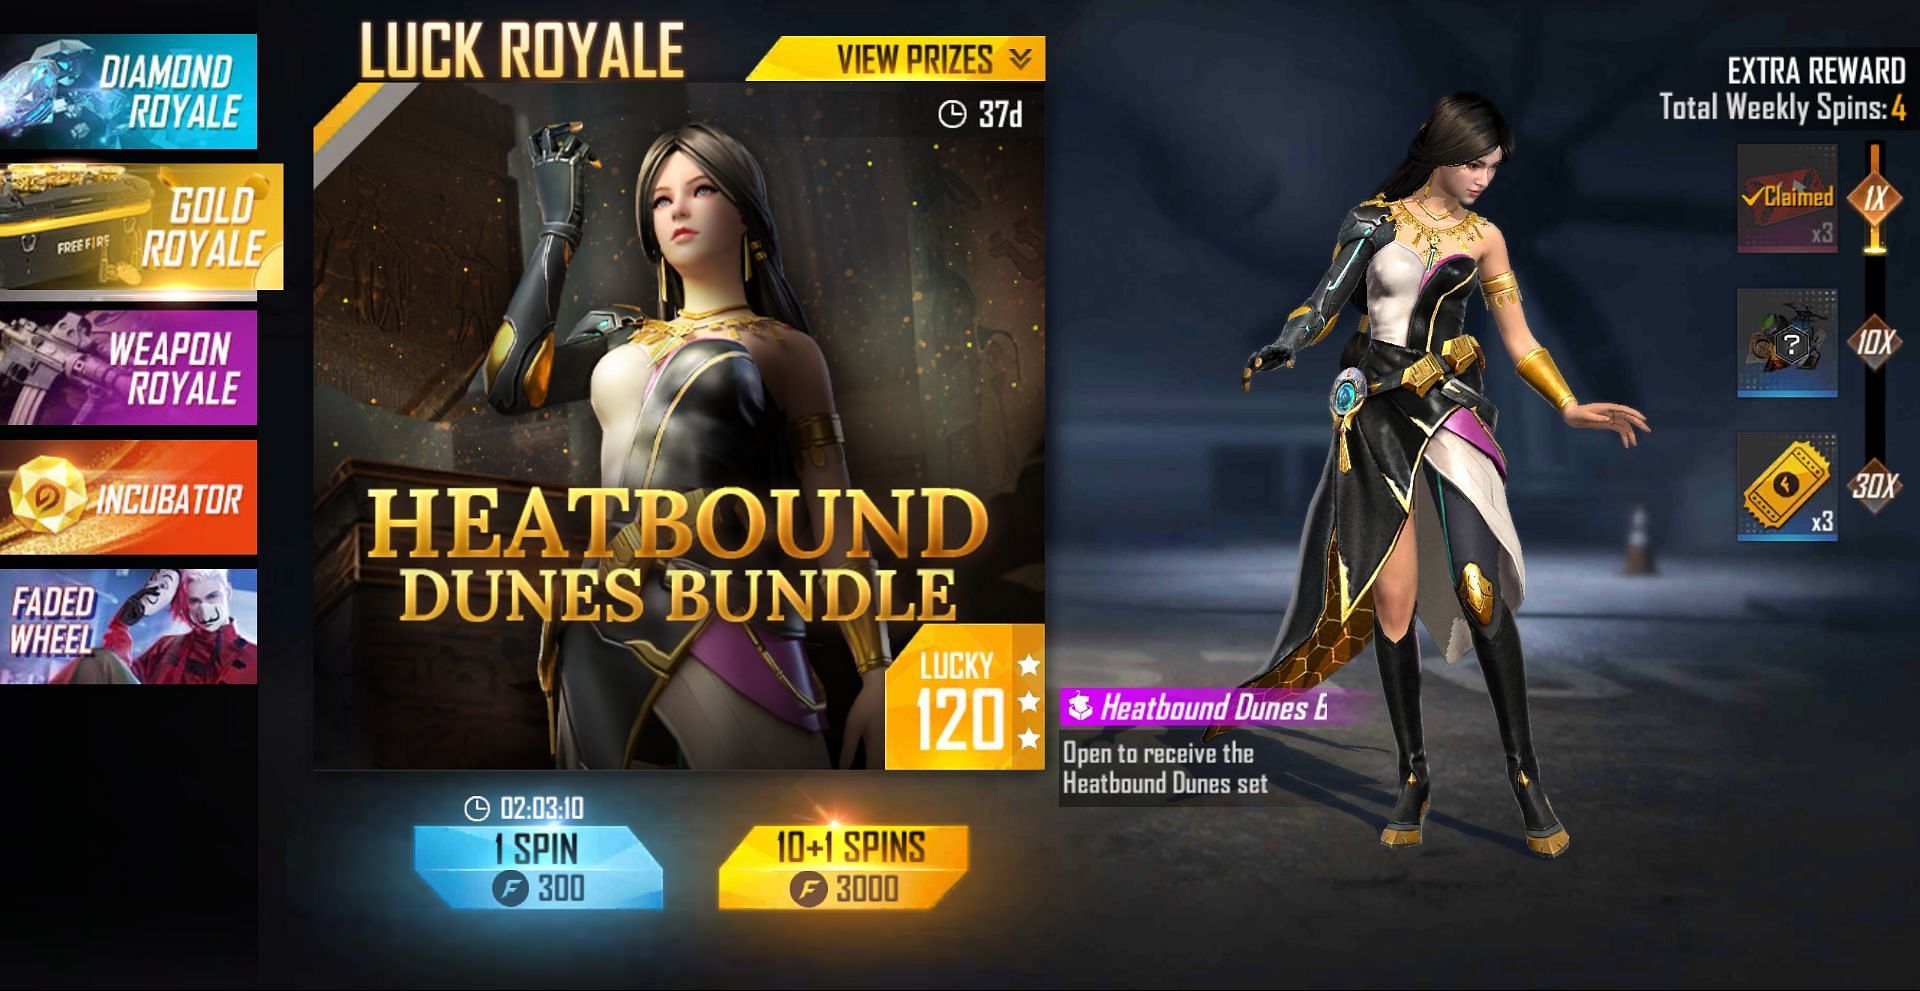 Gold Royale offers unique costume bundles (Image via Free Fire)